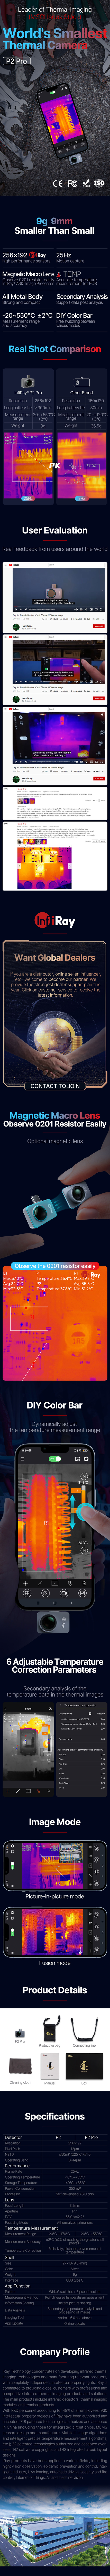 إنفيراي الأشعة تحت الحمراء P2 كاميرا حرارية للهاتف الذكي